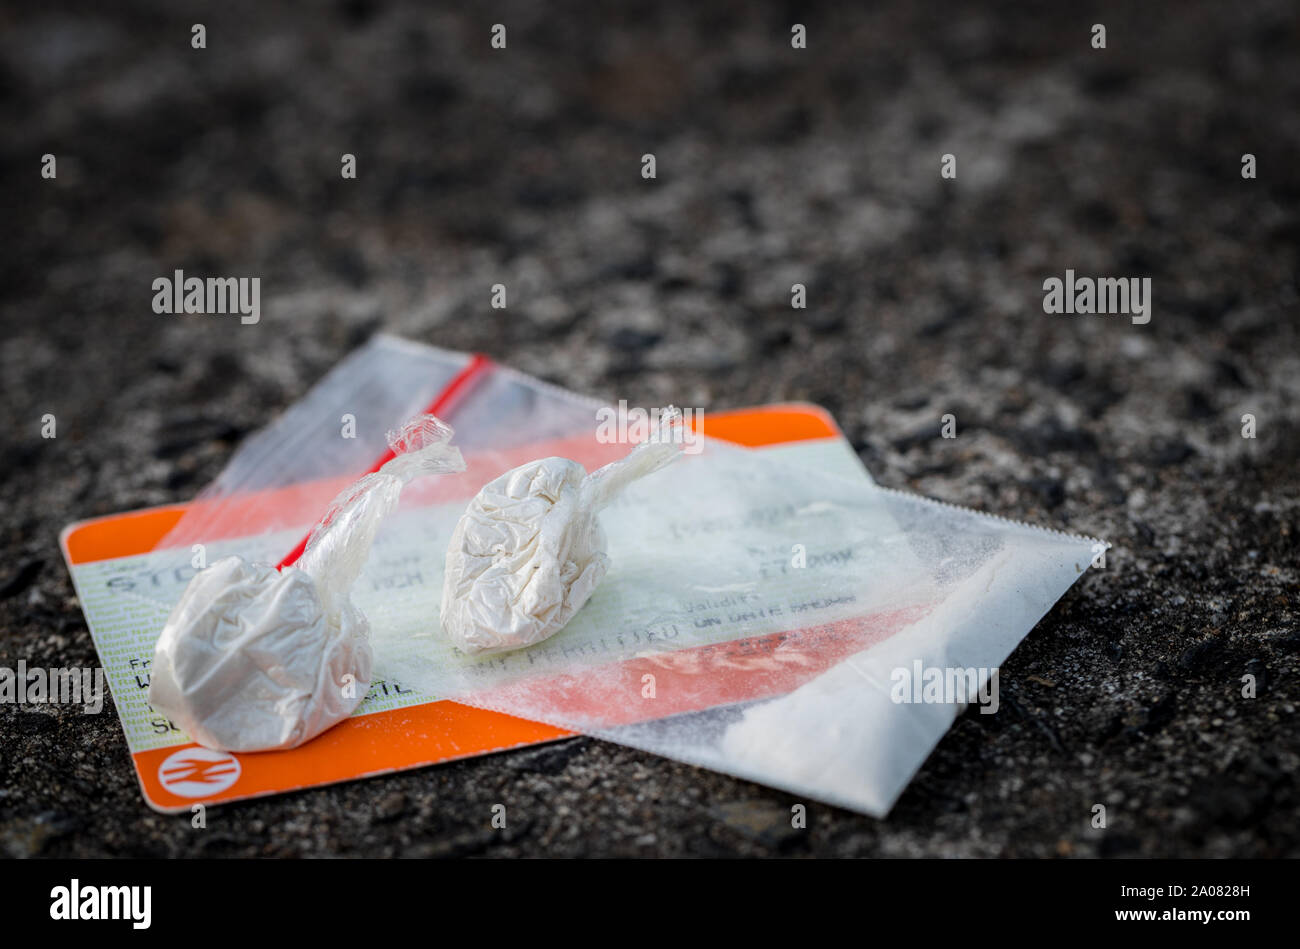 Grafschaft Linien Droge in der UK Umgang (Model Released image) Stockfoto